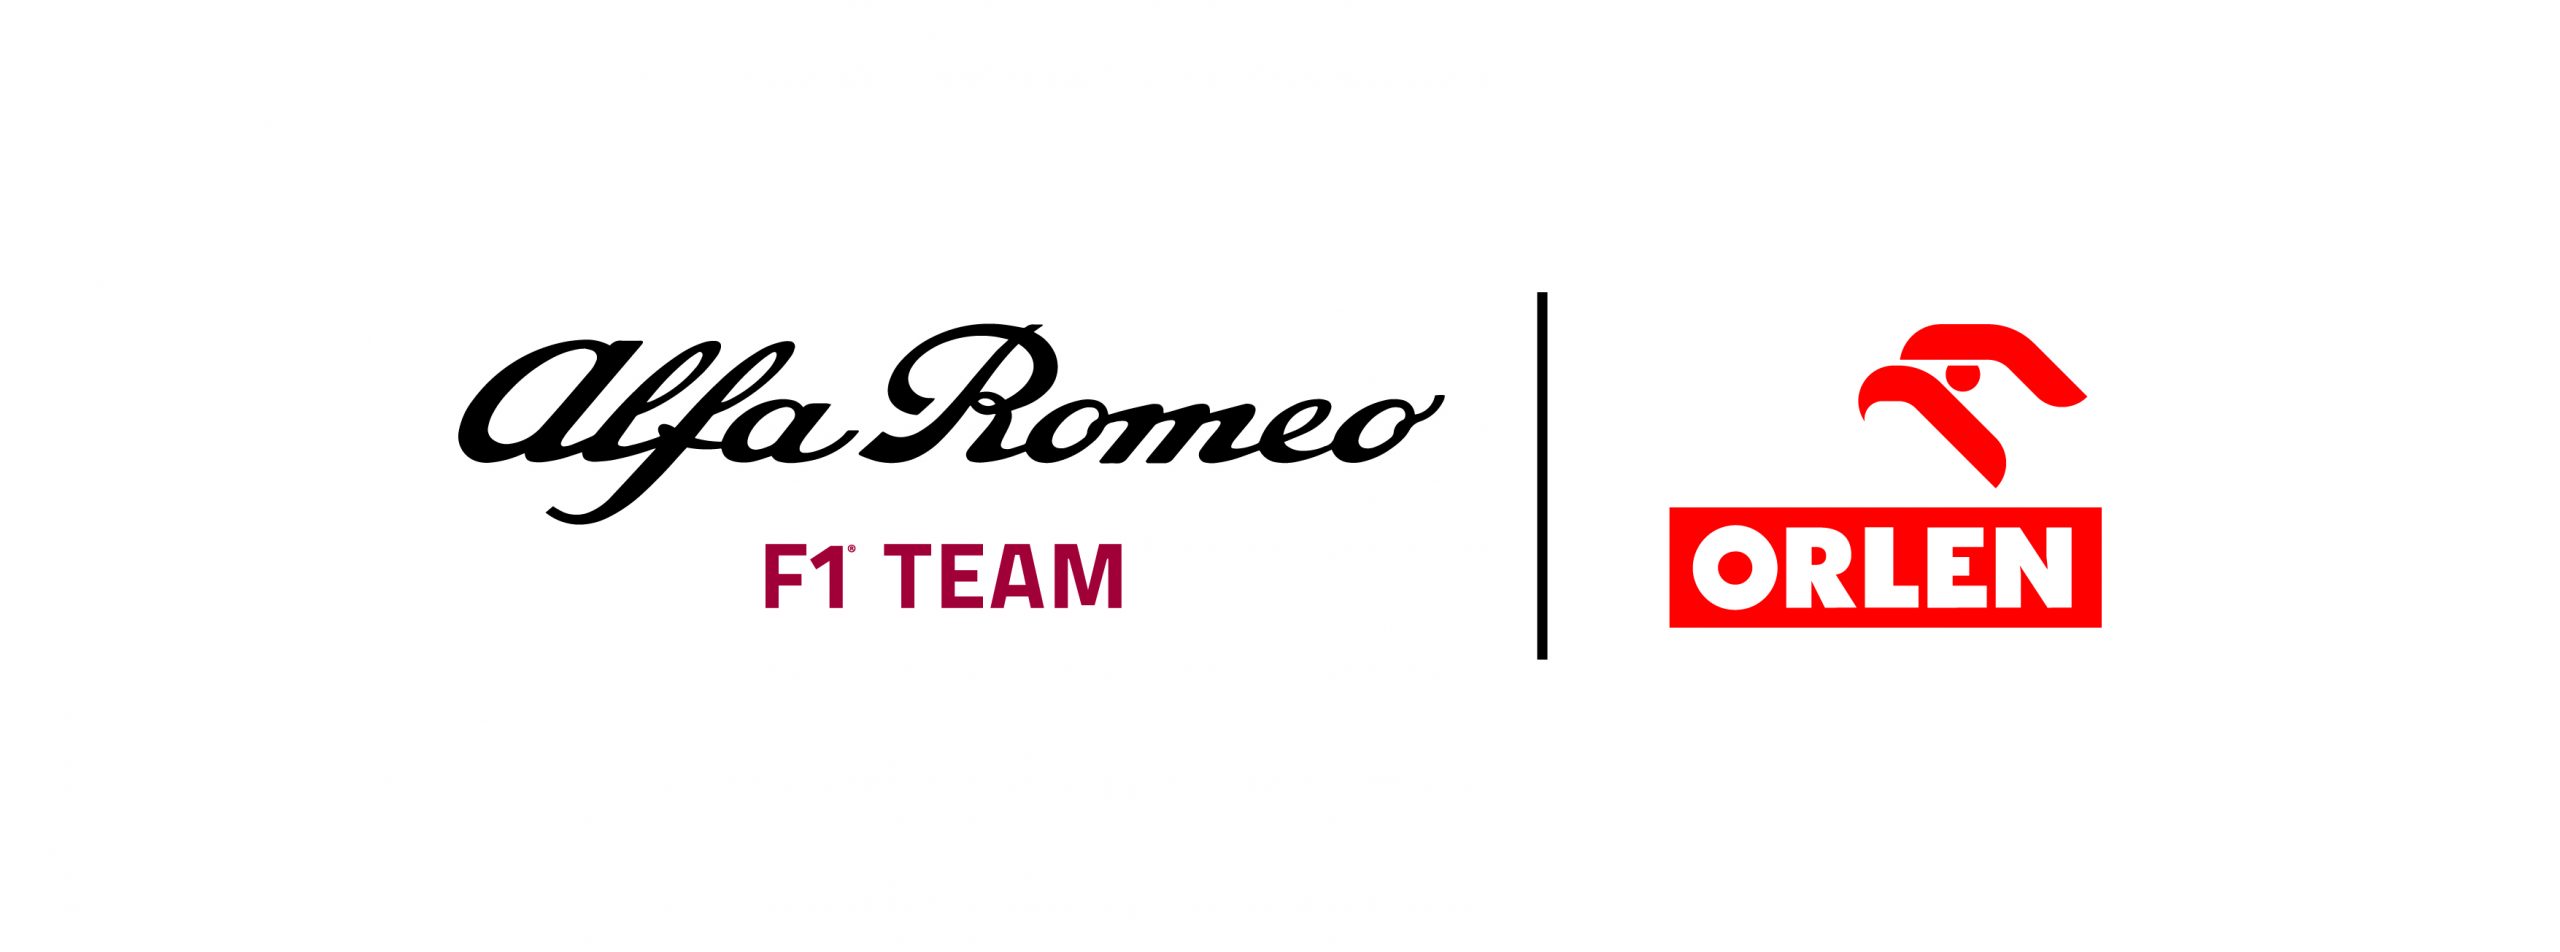 Nuovo logo e nome per l’Alfa Romeo F1 Team.